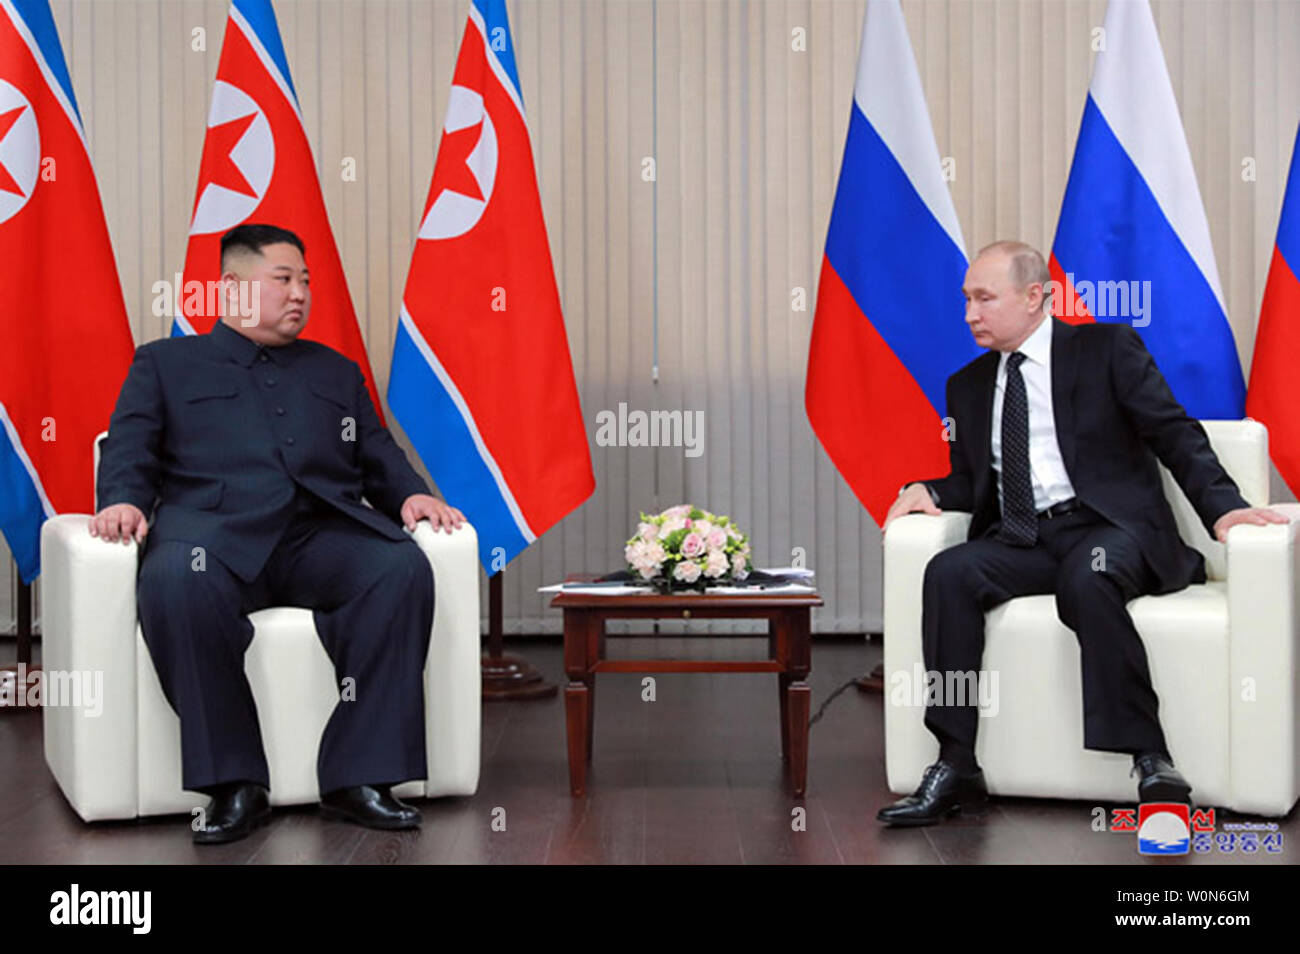 Dieses Bild ist am 26. April, 2019 veröffentlicht, die von der nordkoreanischen Offizielle News Service (KCNA), zeigt die nordkoreanischen Führer Kim Jong Un während einer dreitägigen Gipfels mit dem russischen Präsidenten Wladimir Putin. Die Sitzung, die erste für das Paar, hob die DVRK-russischen Beziehungen, mit Kim, die Russland Wohlstand unter der Führung von Putin. Foto von Kcna/UPI Stockfoto